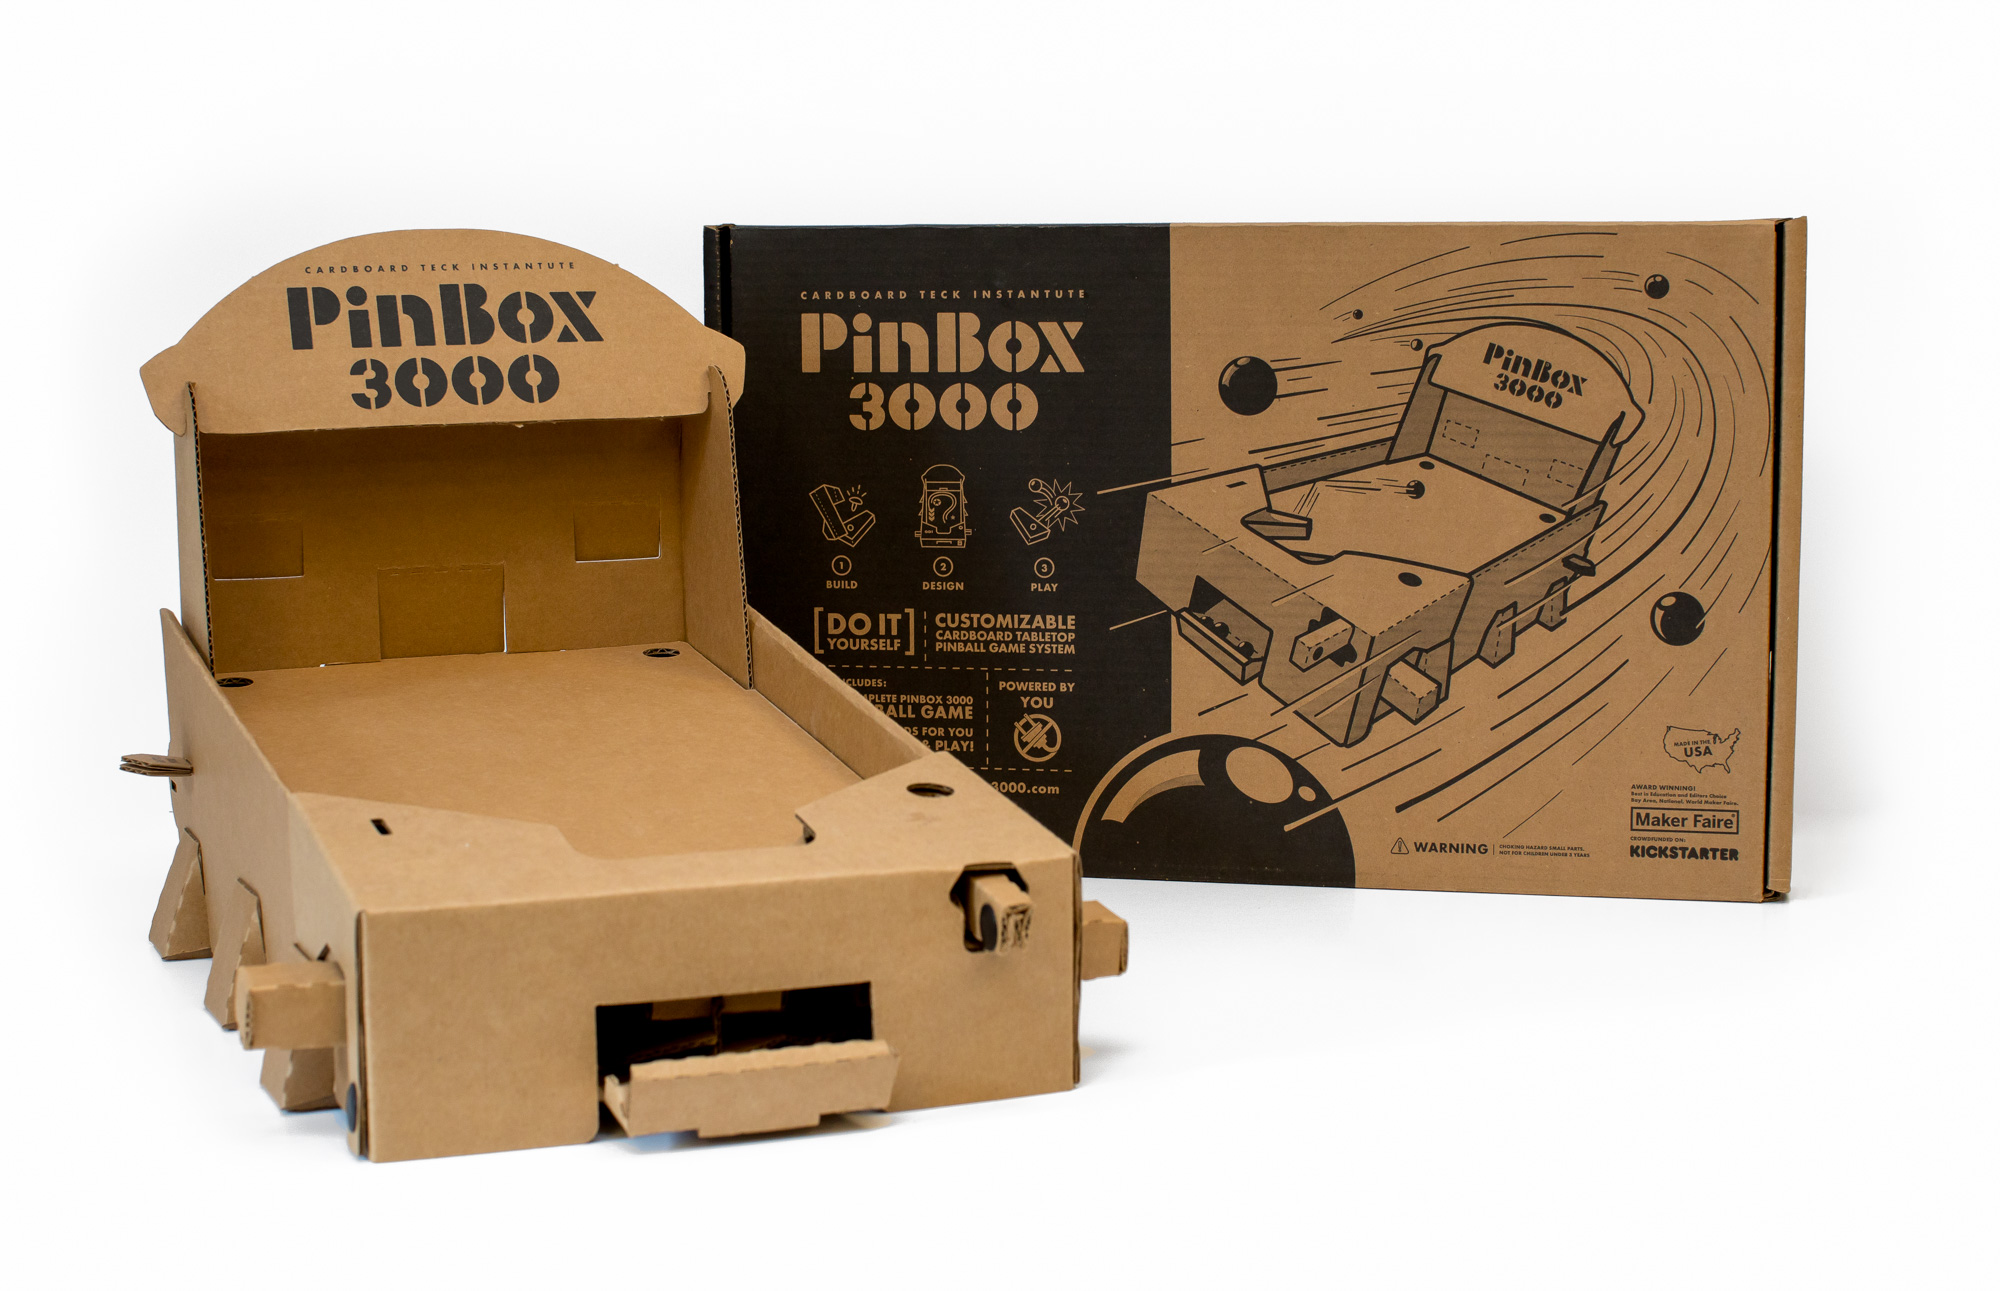 PinBox 3000 Art-cade by Cardboard Teck Instantute